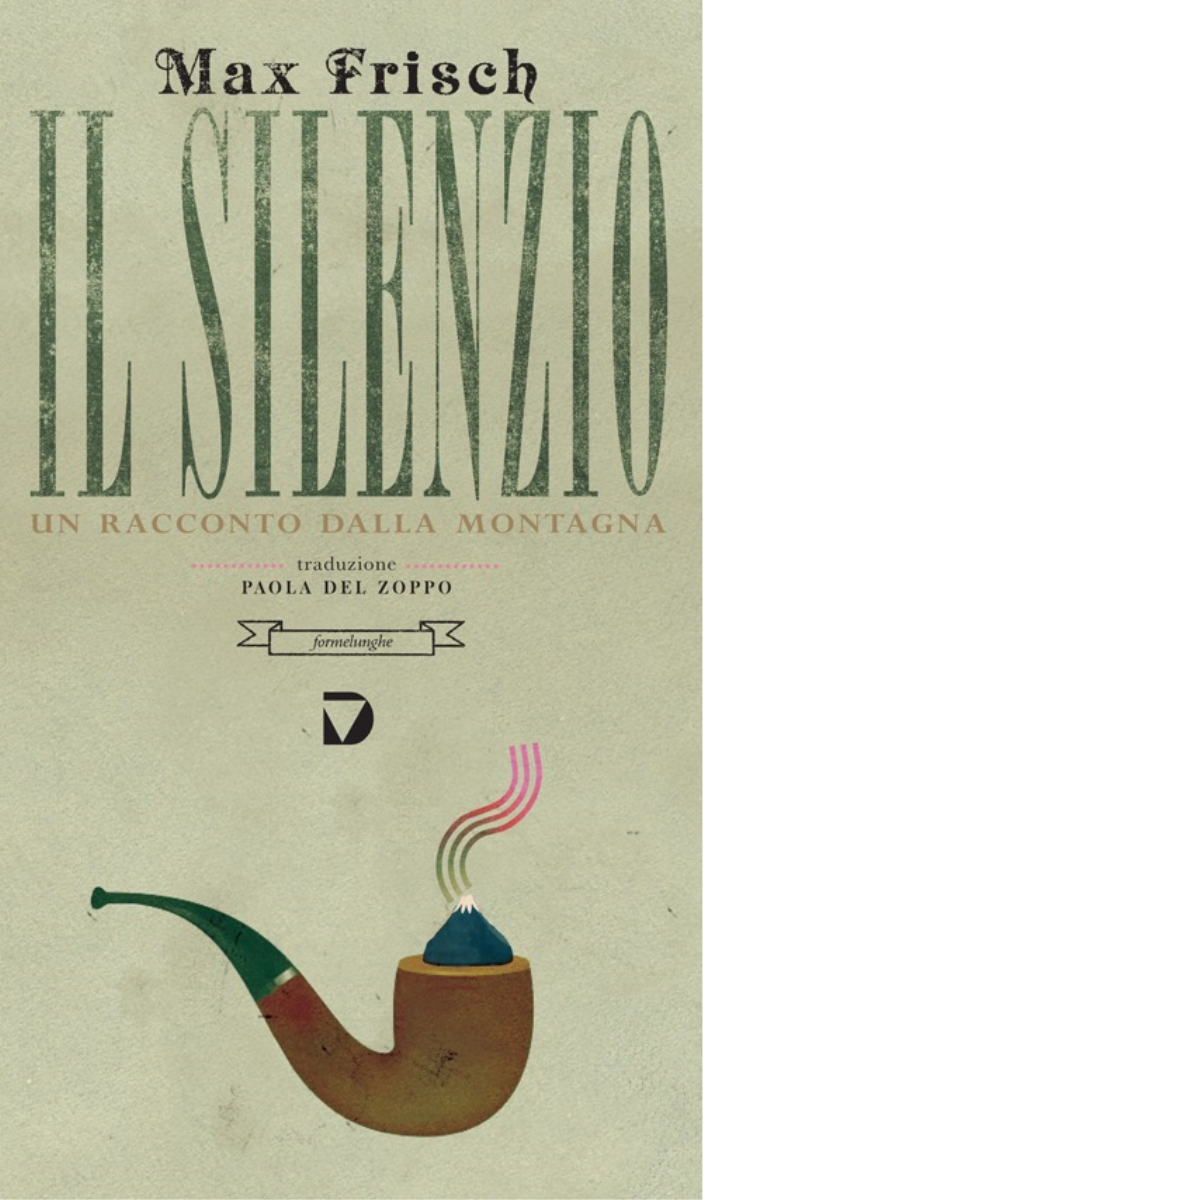 Il silenzio. Un racconto dalla montagna di Max Frisch - Del vecchio, 2014